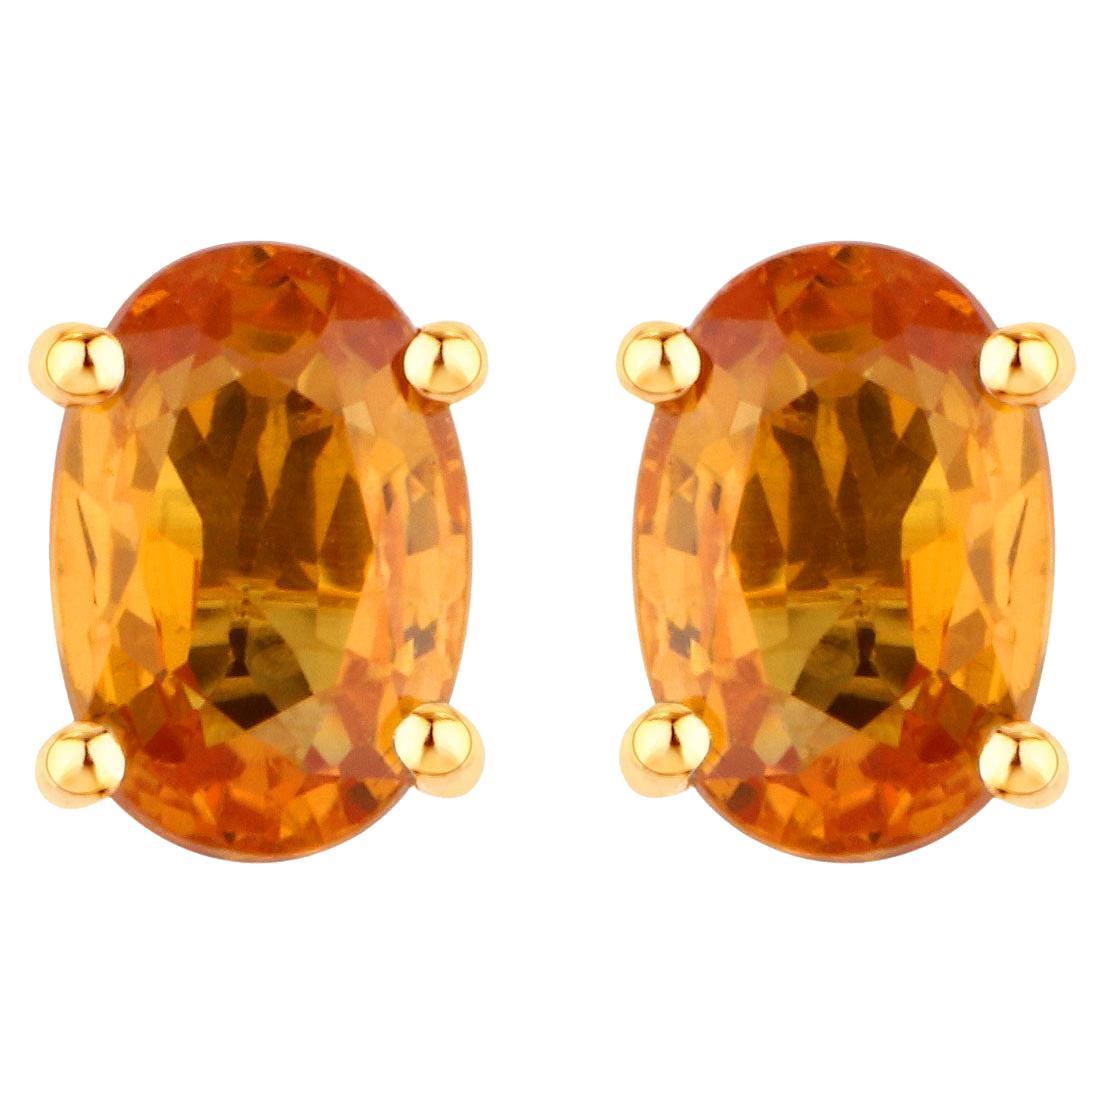 Clous d'oreilles saphir orange 1,10 carats au total en or jaune 14 carats